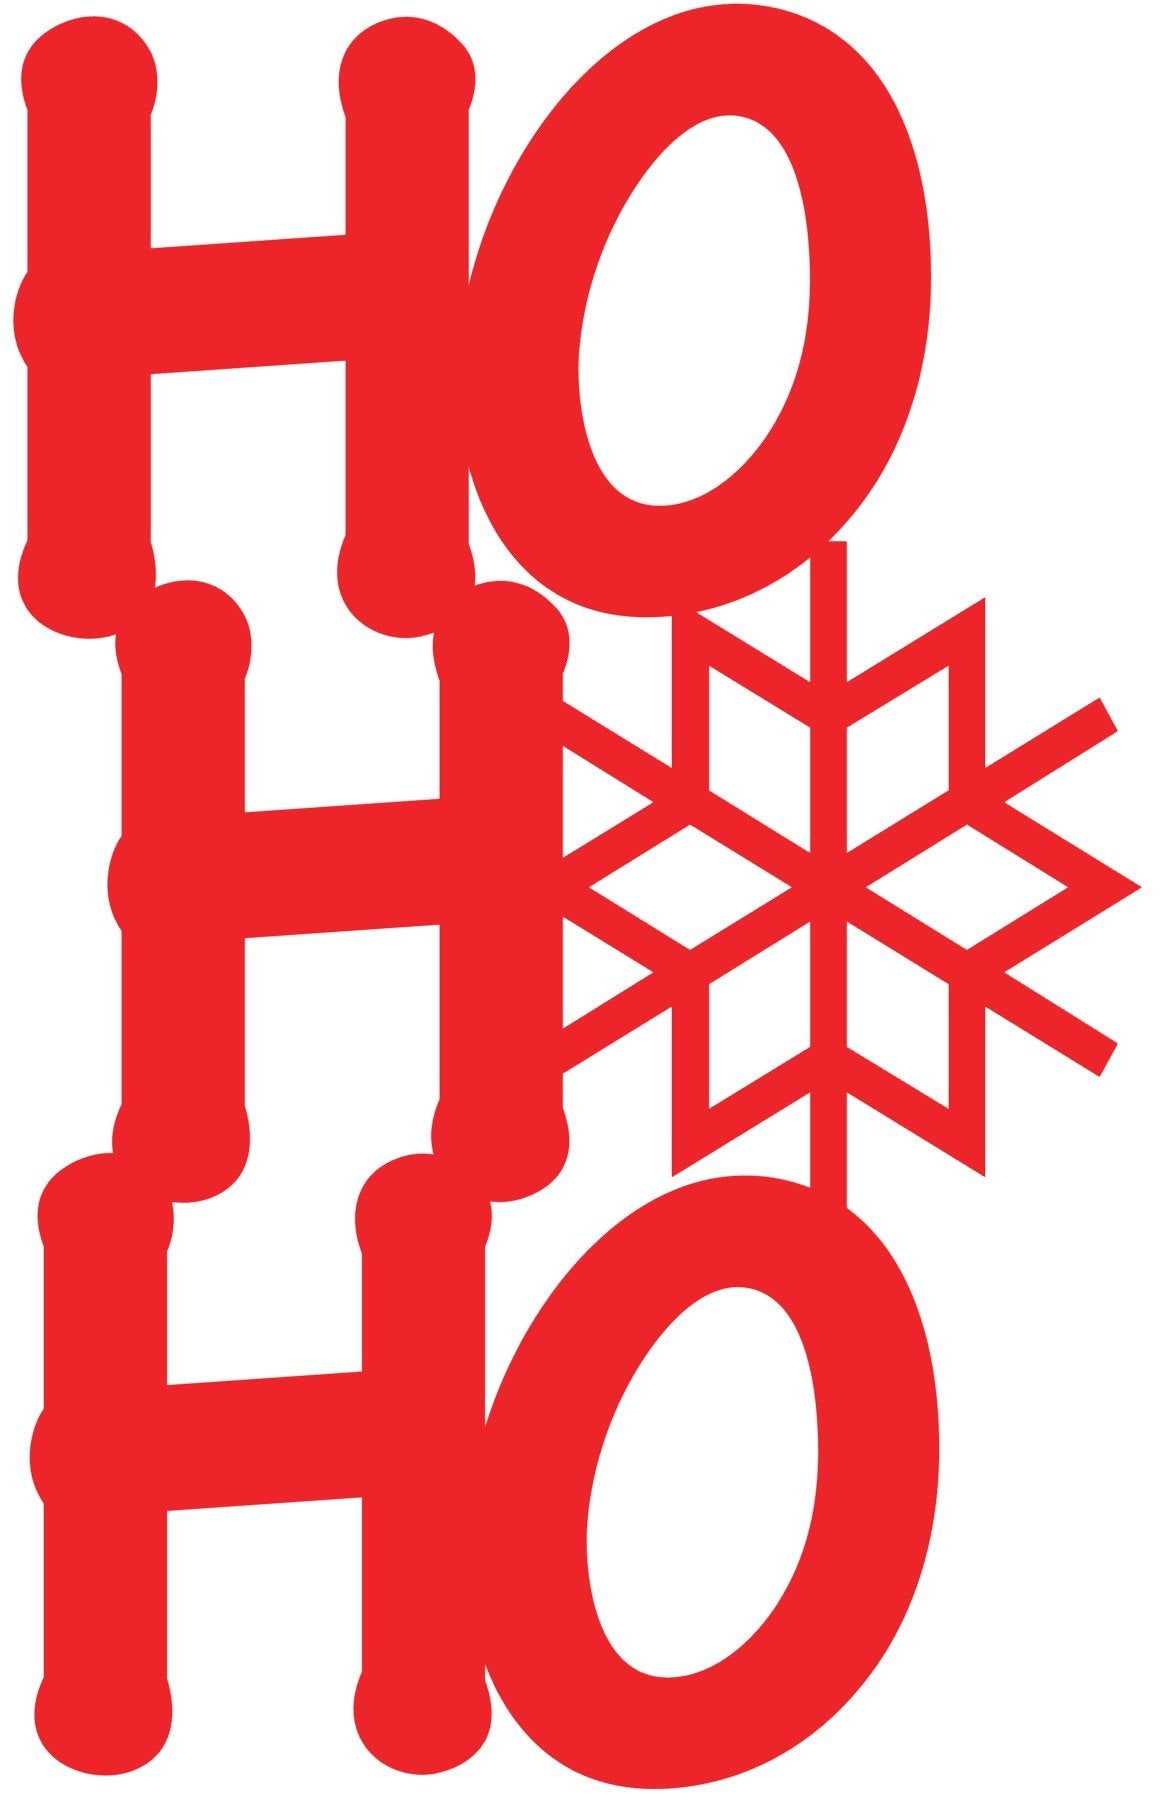 HO HO HO with Snow FLake - Bucktooth Designs